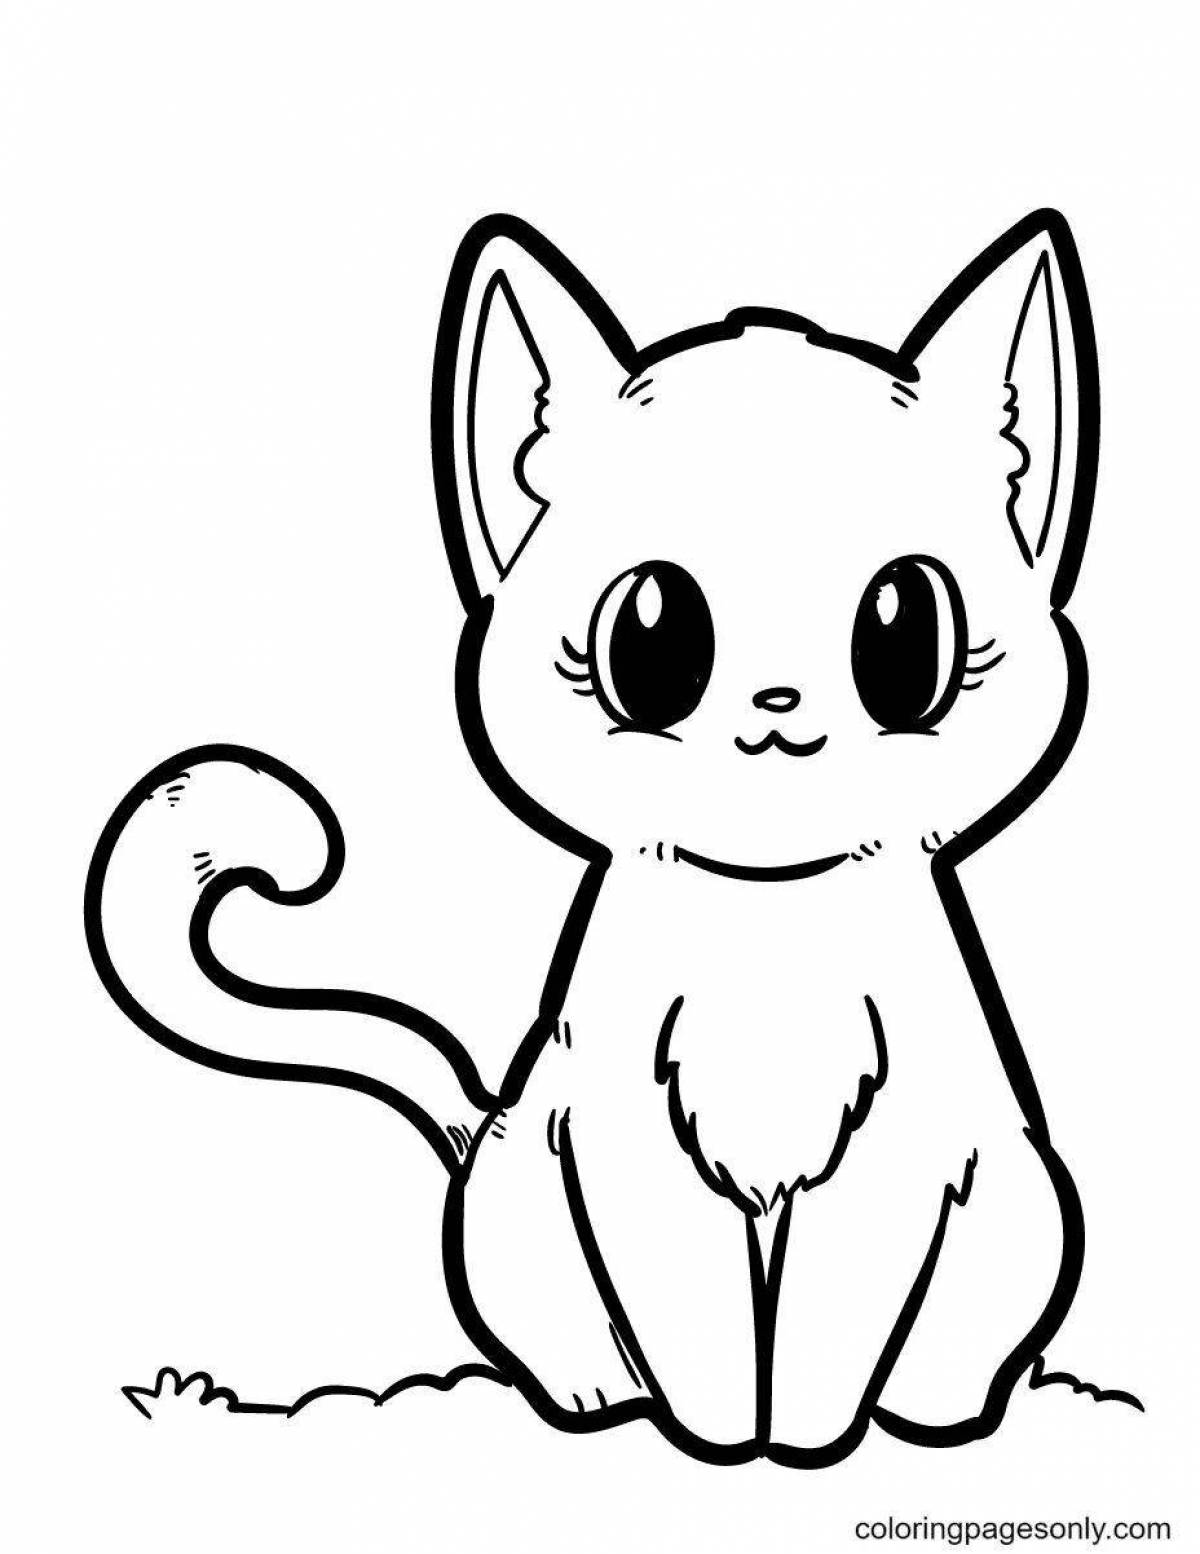 Радостный котенок раскраски для детей